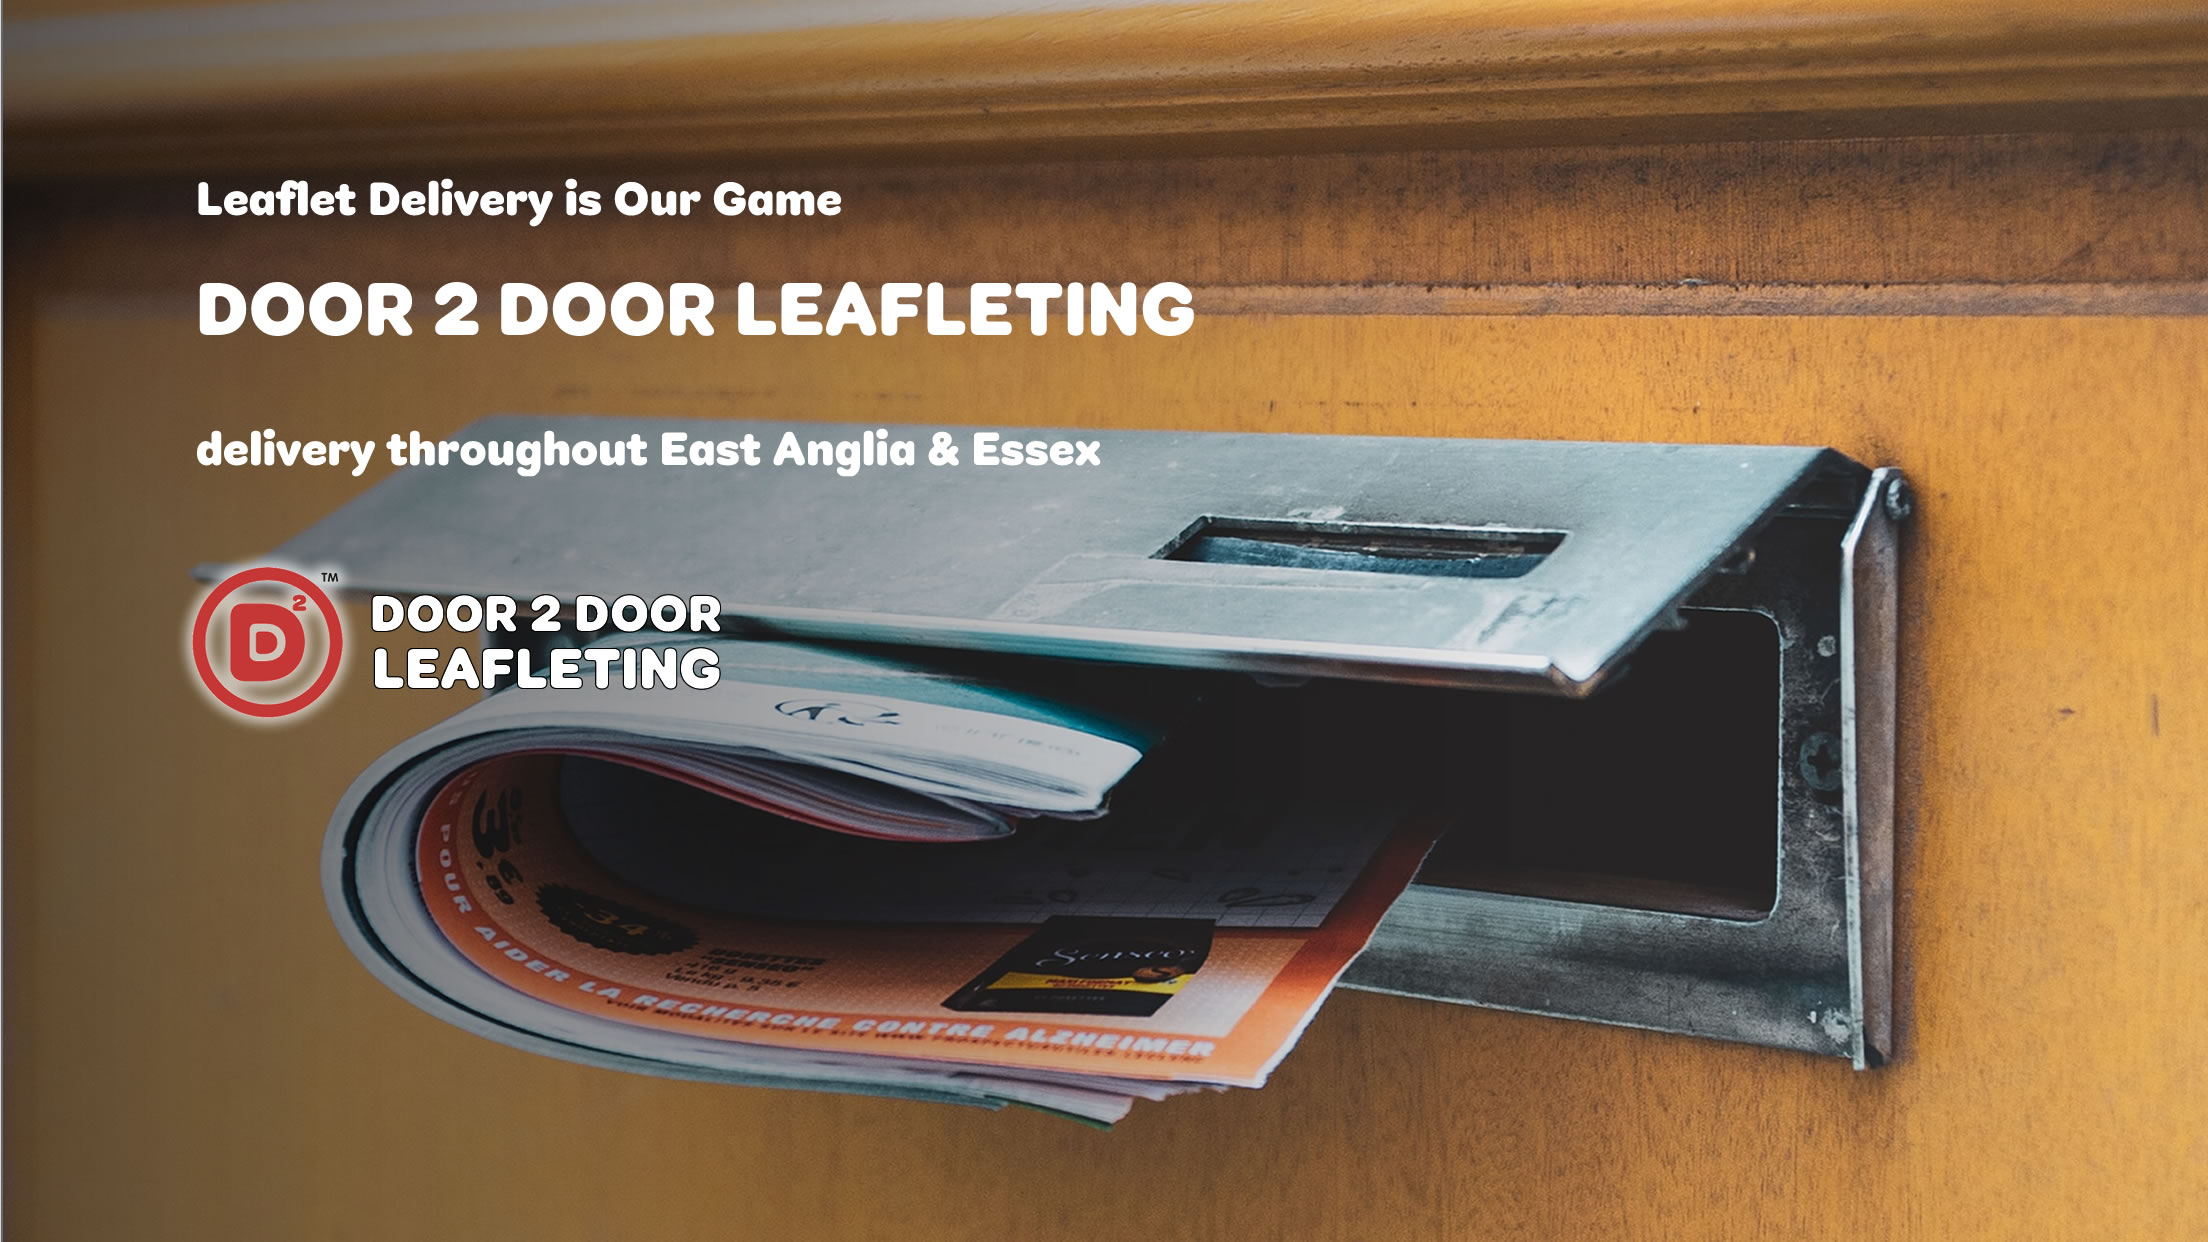 Door 2 Door Leafleting